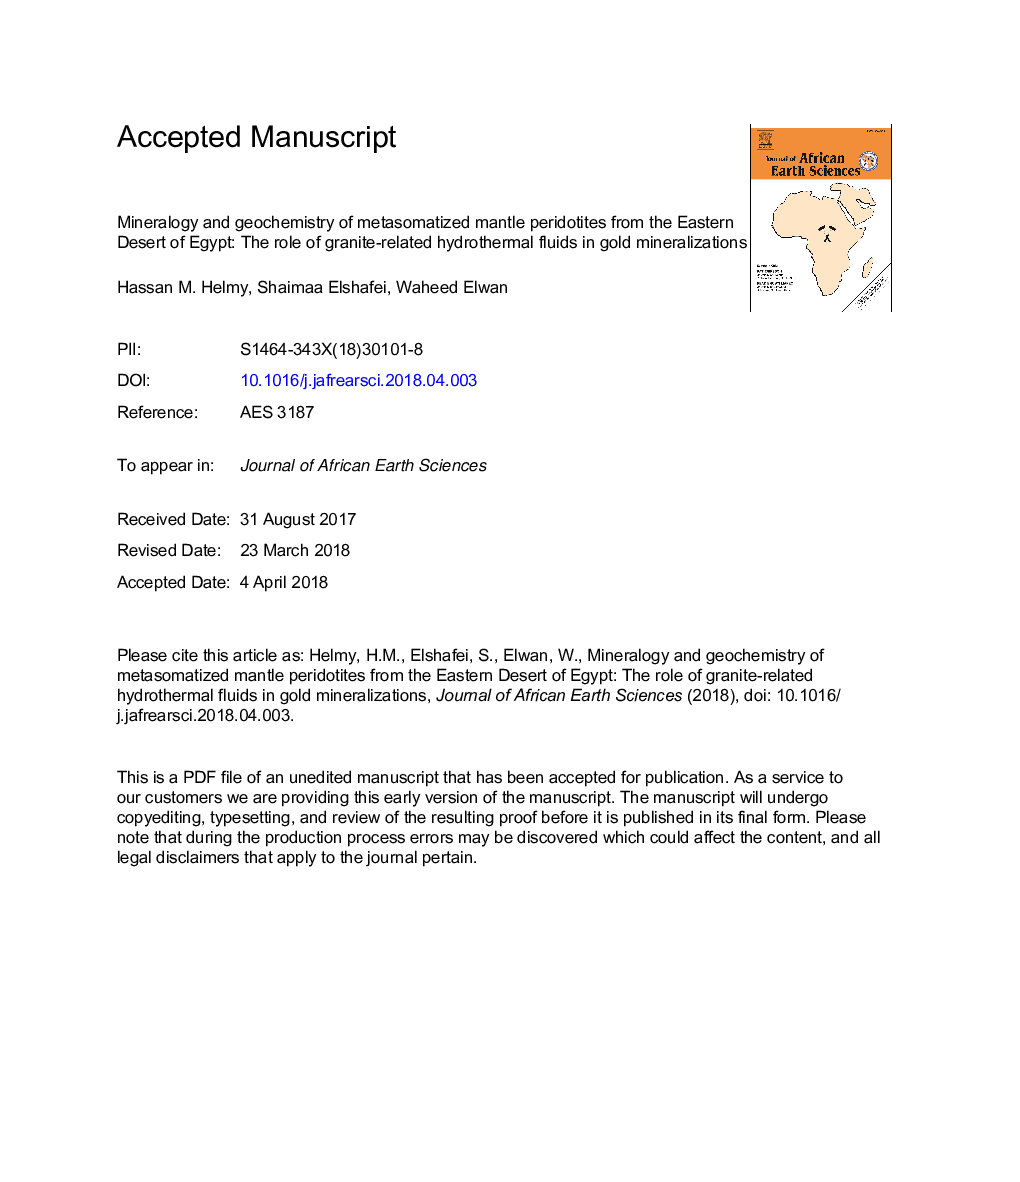 کانی شناسی و ژئوشیمی پیریتوتیت های گوشته متاسوماتیزه از صحرای خاک مصر: نقش مایعات هیدروترمالی گرانیت در کانی سازی طلا